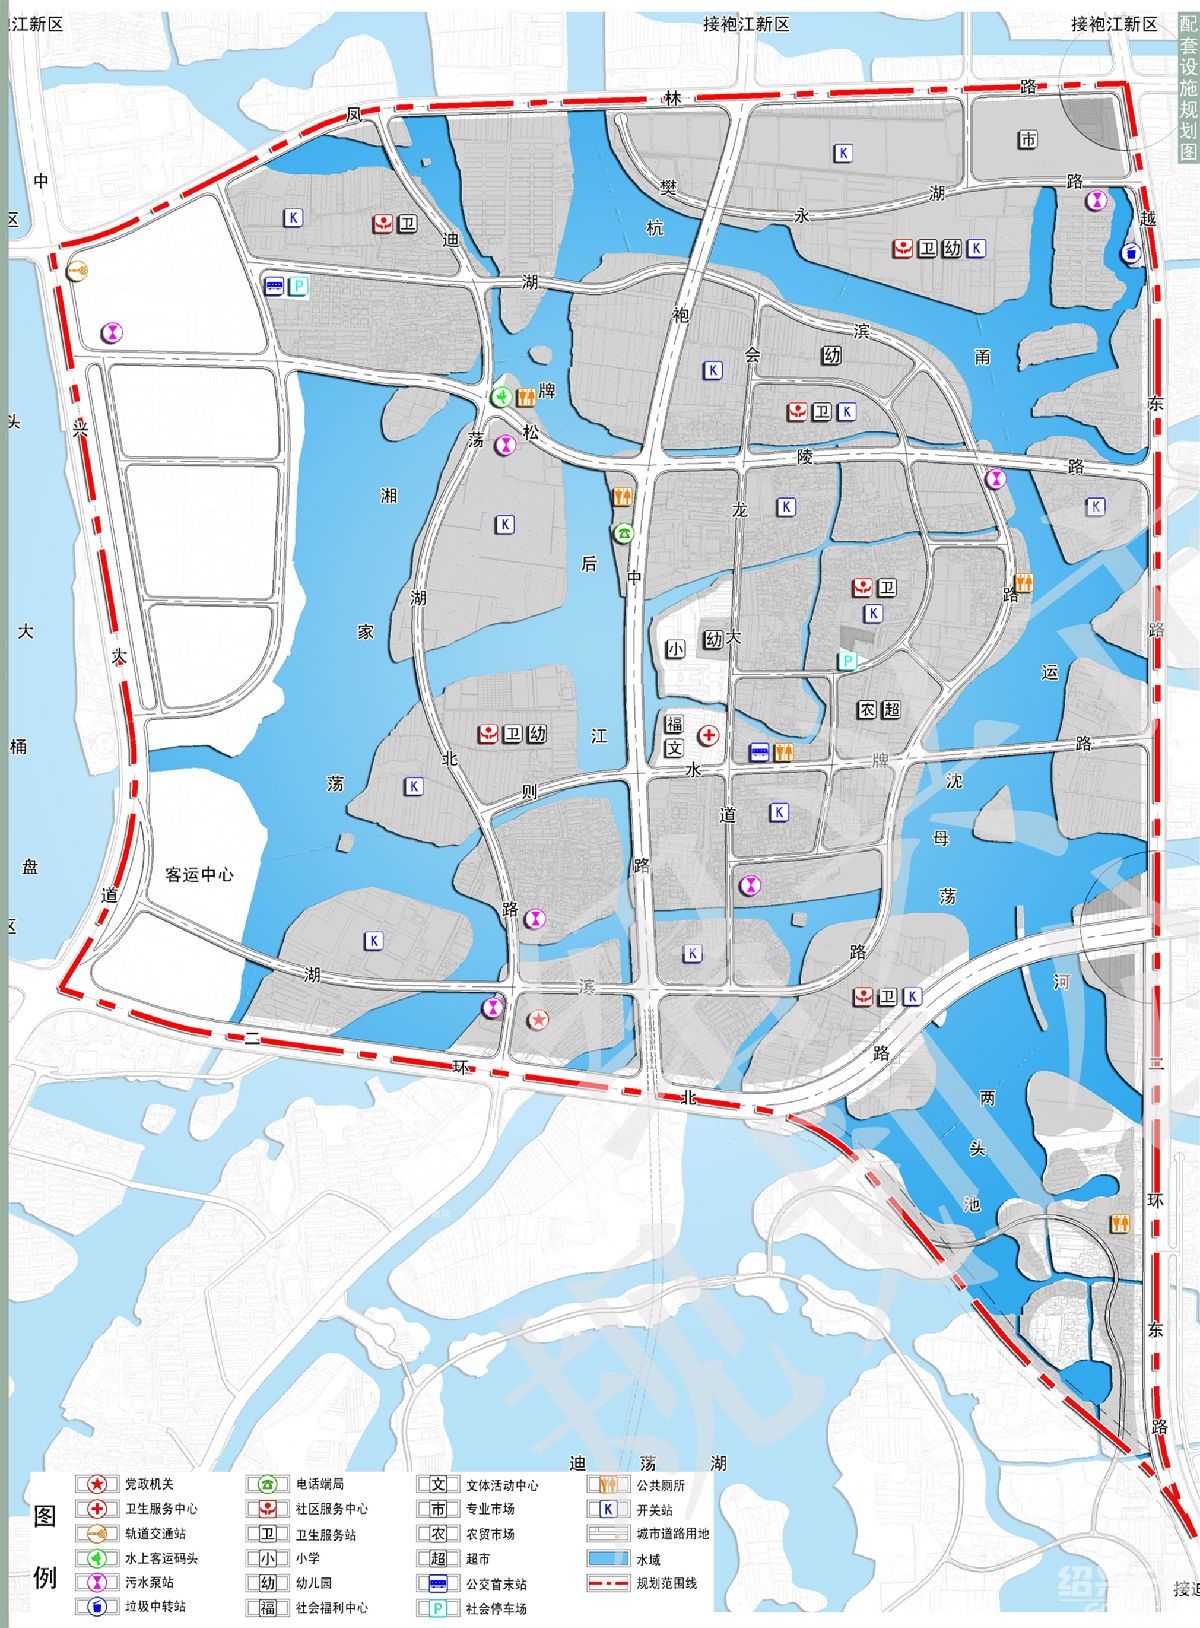 越城区东湖镇20年-2020年总体规划,重点布局则水区域